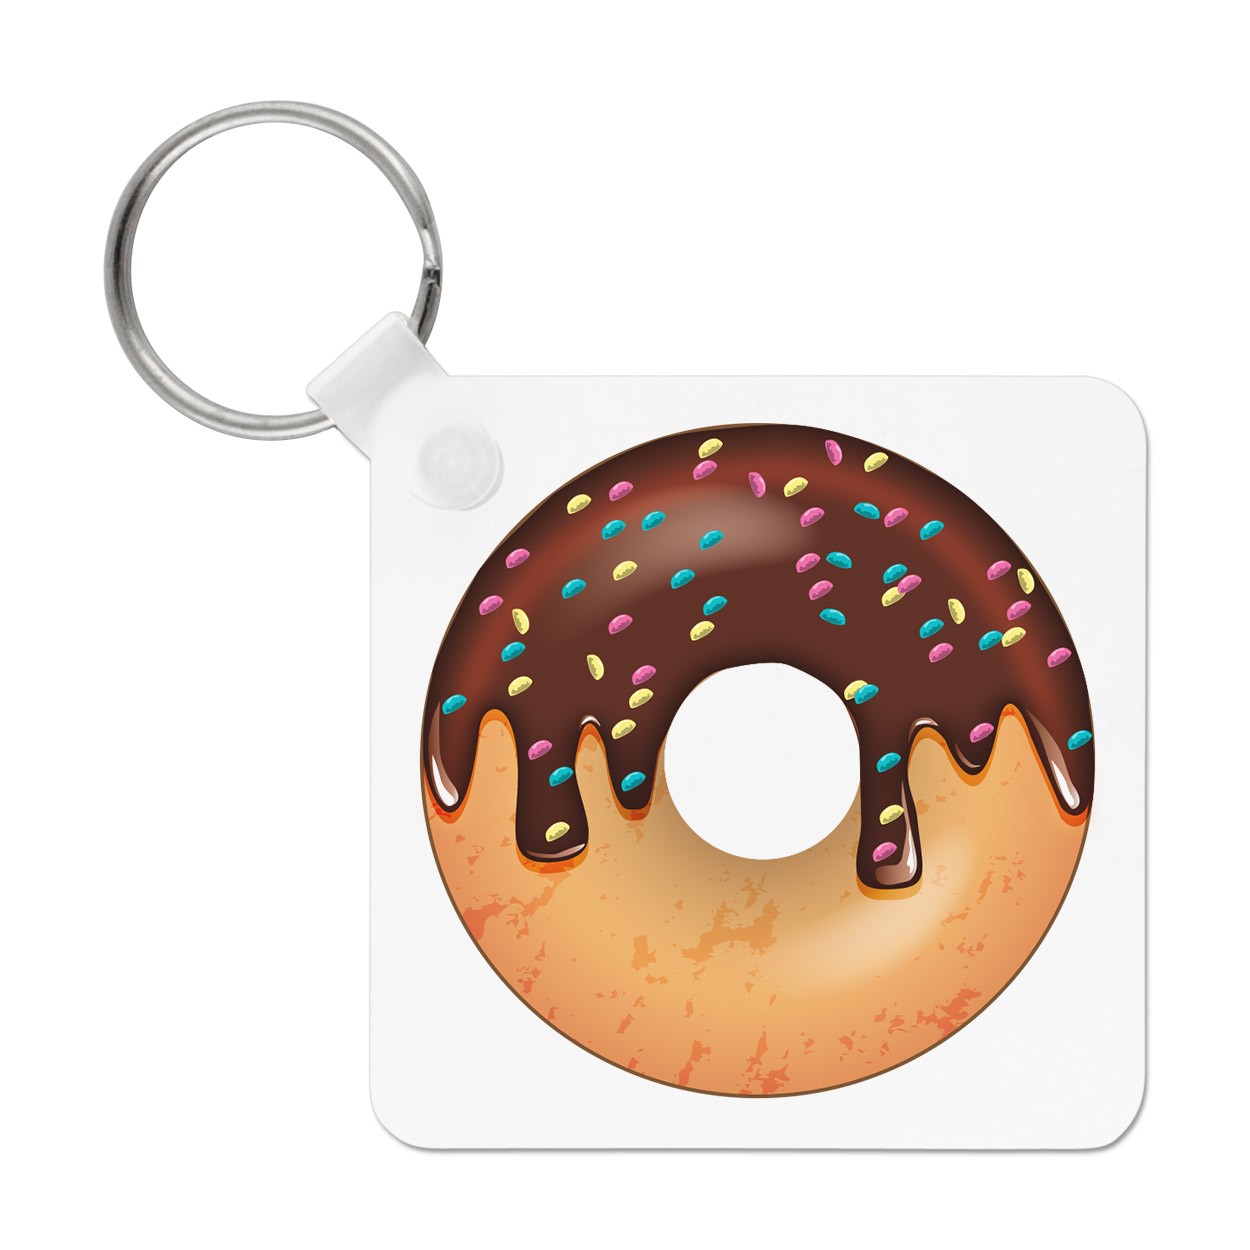 Chocolate Sprinkled Glazed Doughnut Keyring Key Chain